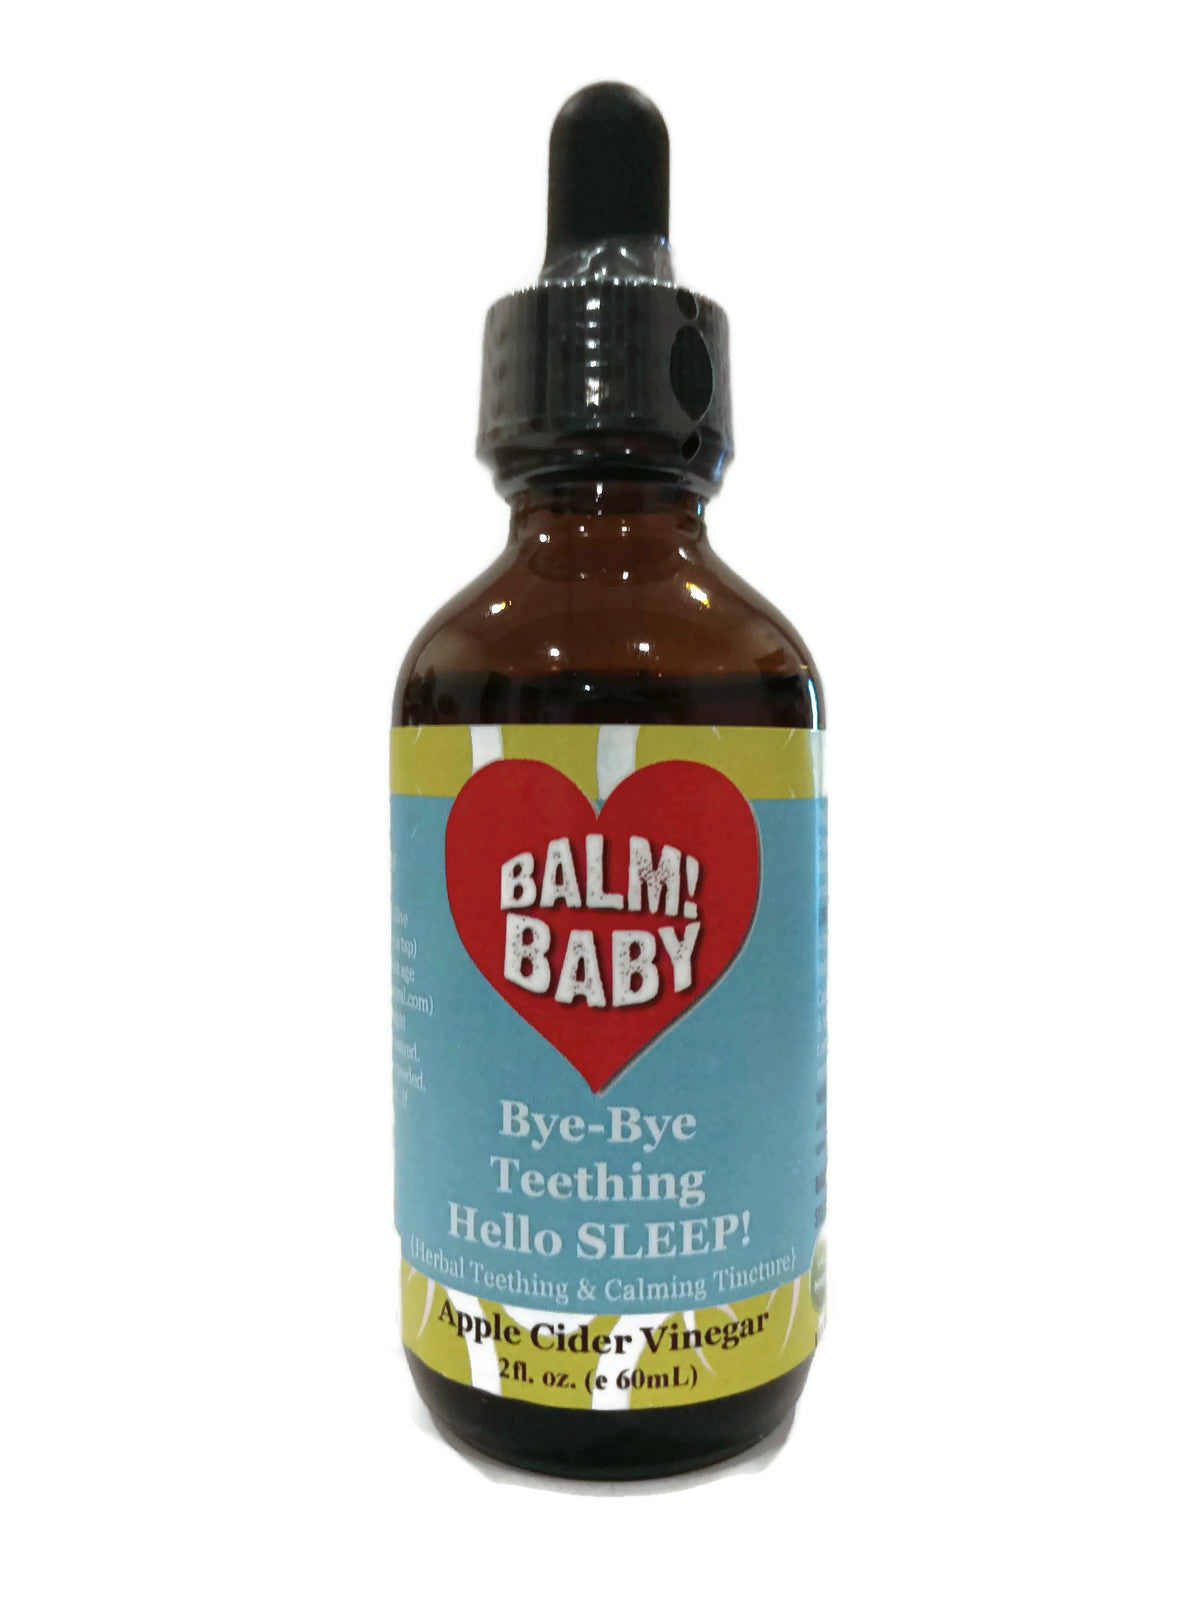 BALM! Baby - Organic Bye Bye Teething, Hello SLEEP!  Organic Teething & Calming Tincture